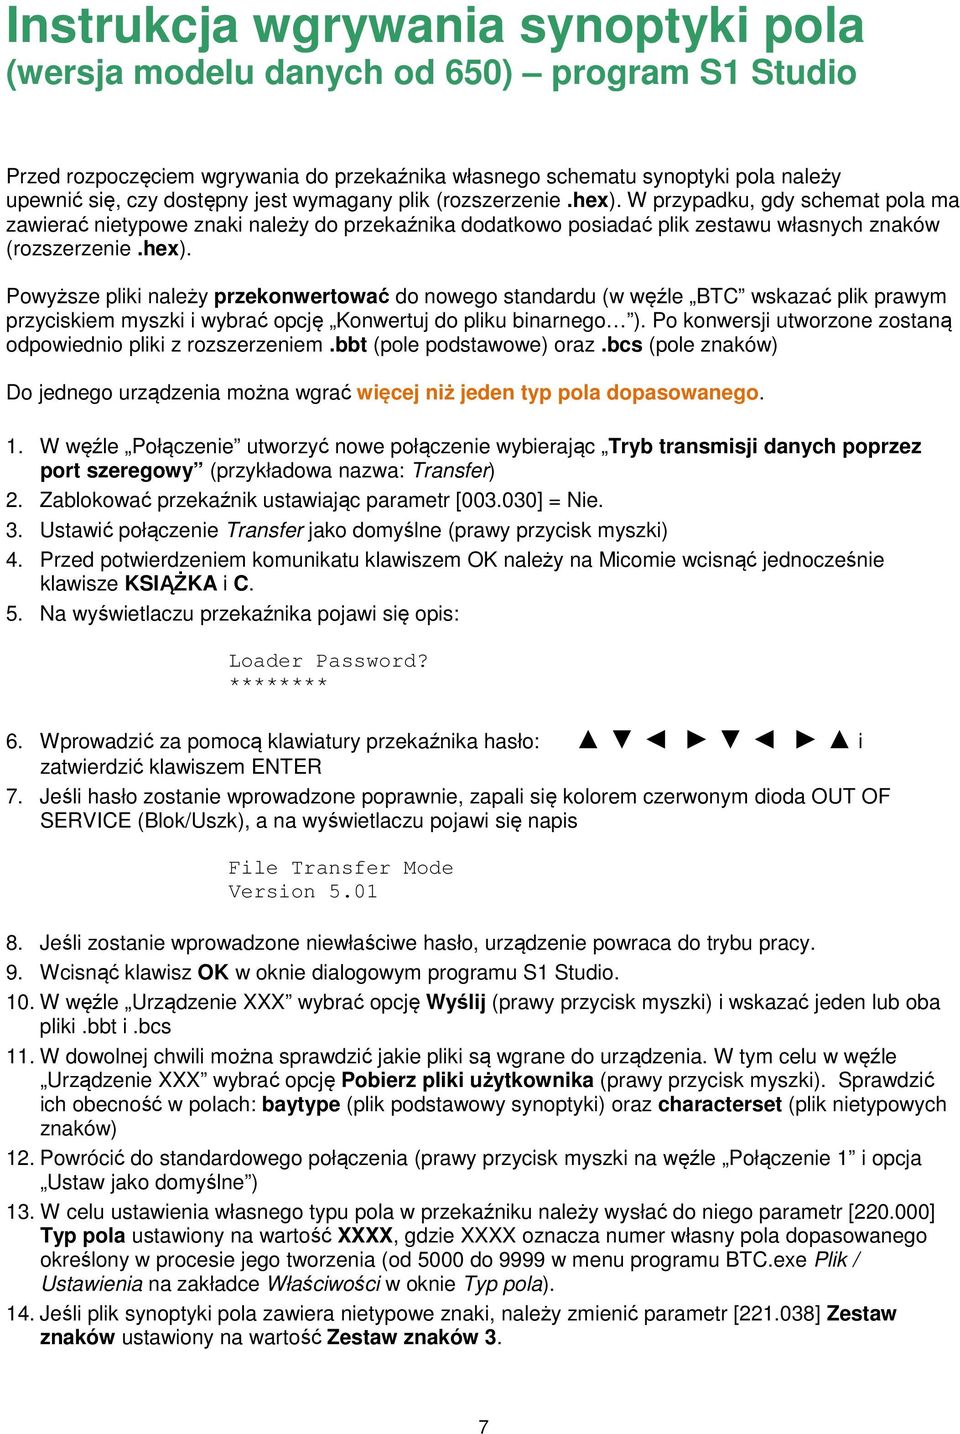 Instrukcja Wgrywania Synoptyki Pola (Wersja Modelu Danych Do 634) - Pdf Free Download